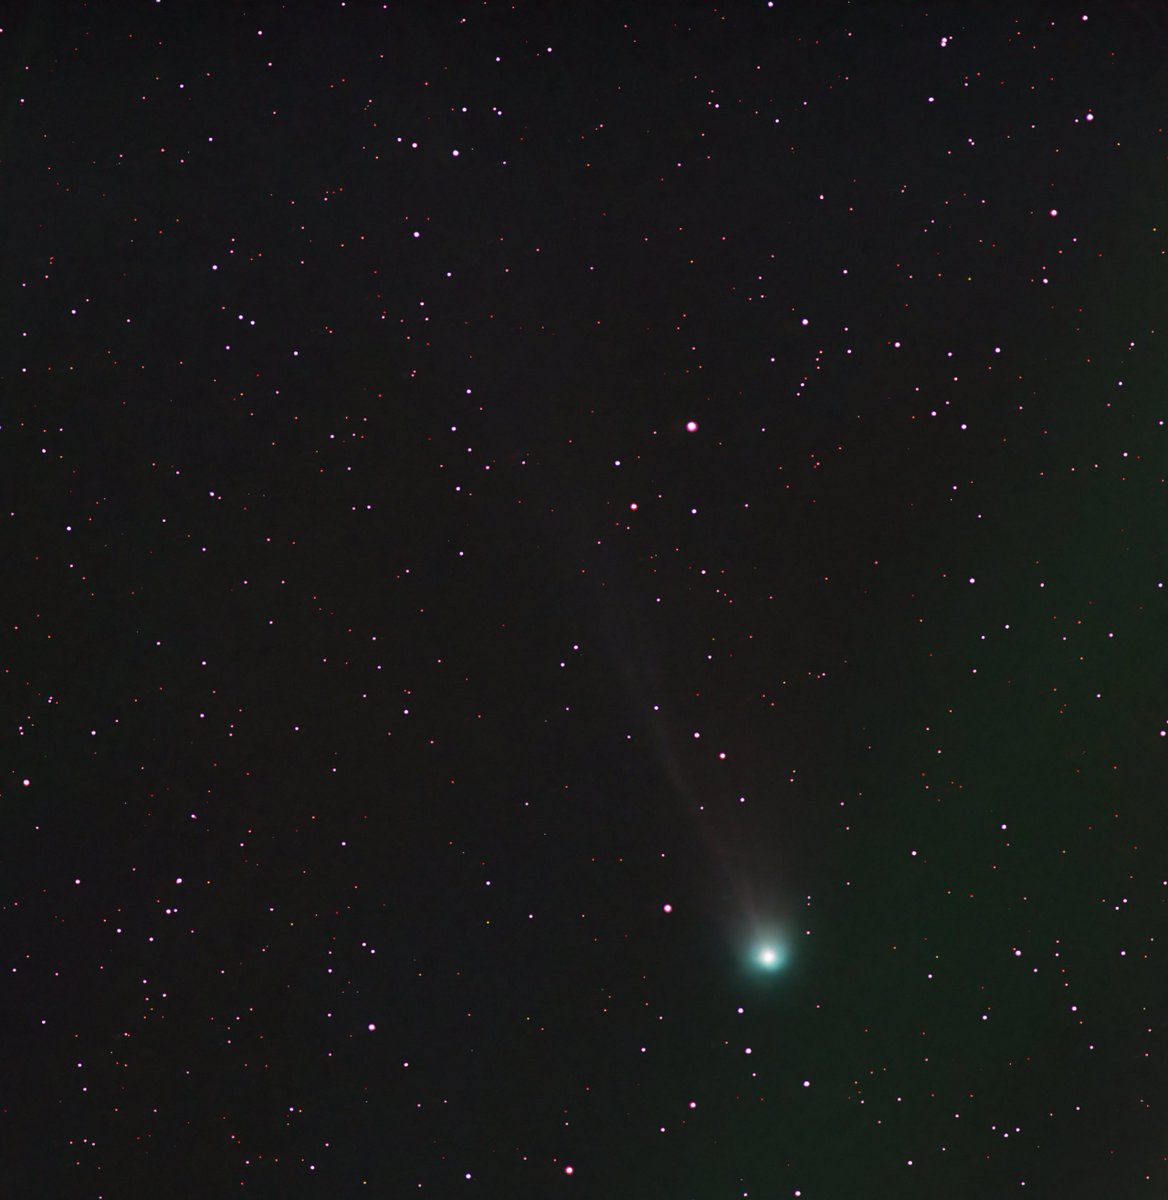 やっと撮影出来ました。💦
流行りの #ponsbrooks #12p #ポンスブルック彗星 
撮影してすぐに電線にかかってしまいました。
一応尾っぽも見えたので満足😊
星の色で緑はないらしいけど、彗星ばかりは緑に輝いてて綺麗ですねぇ💫